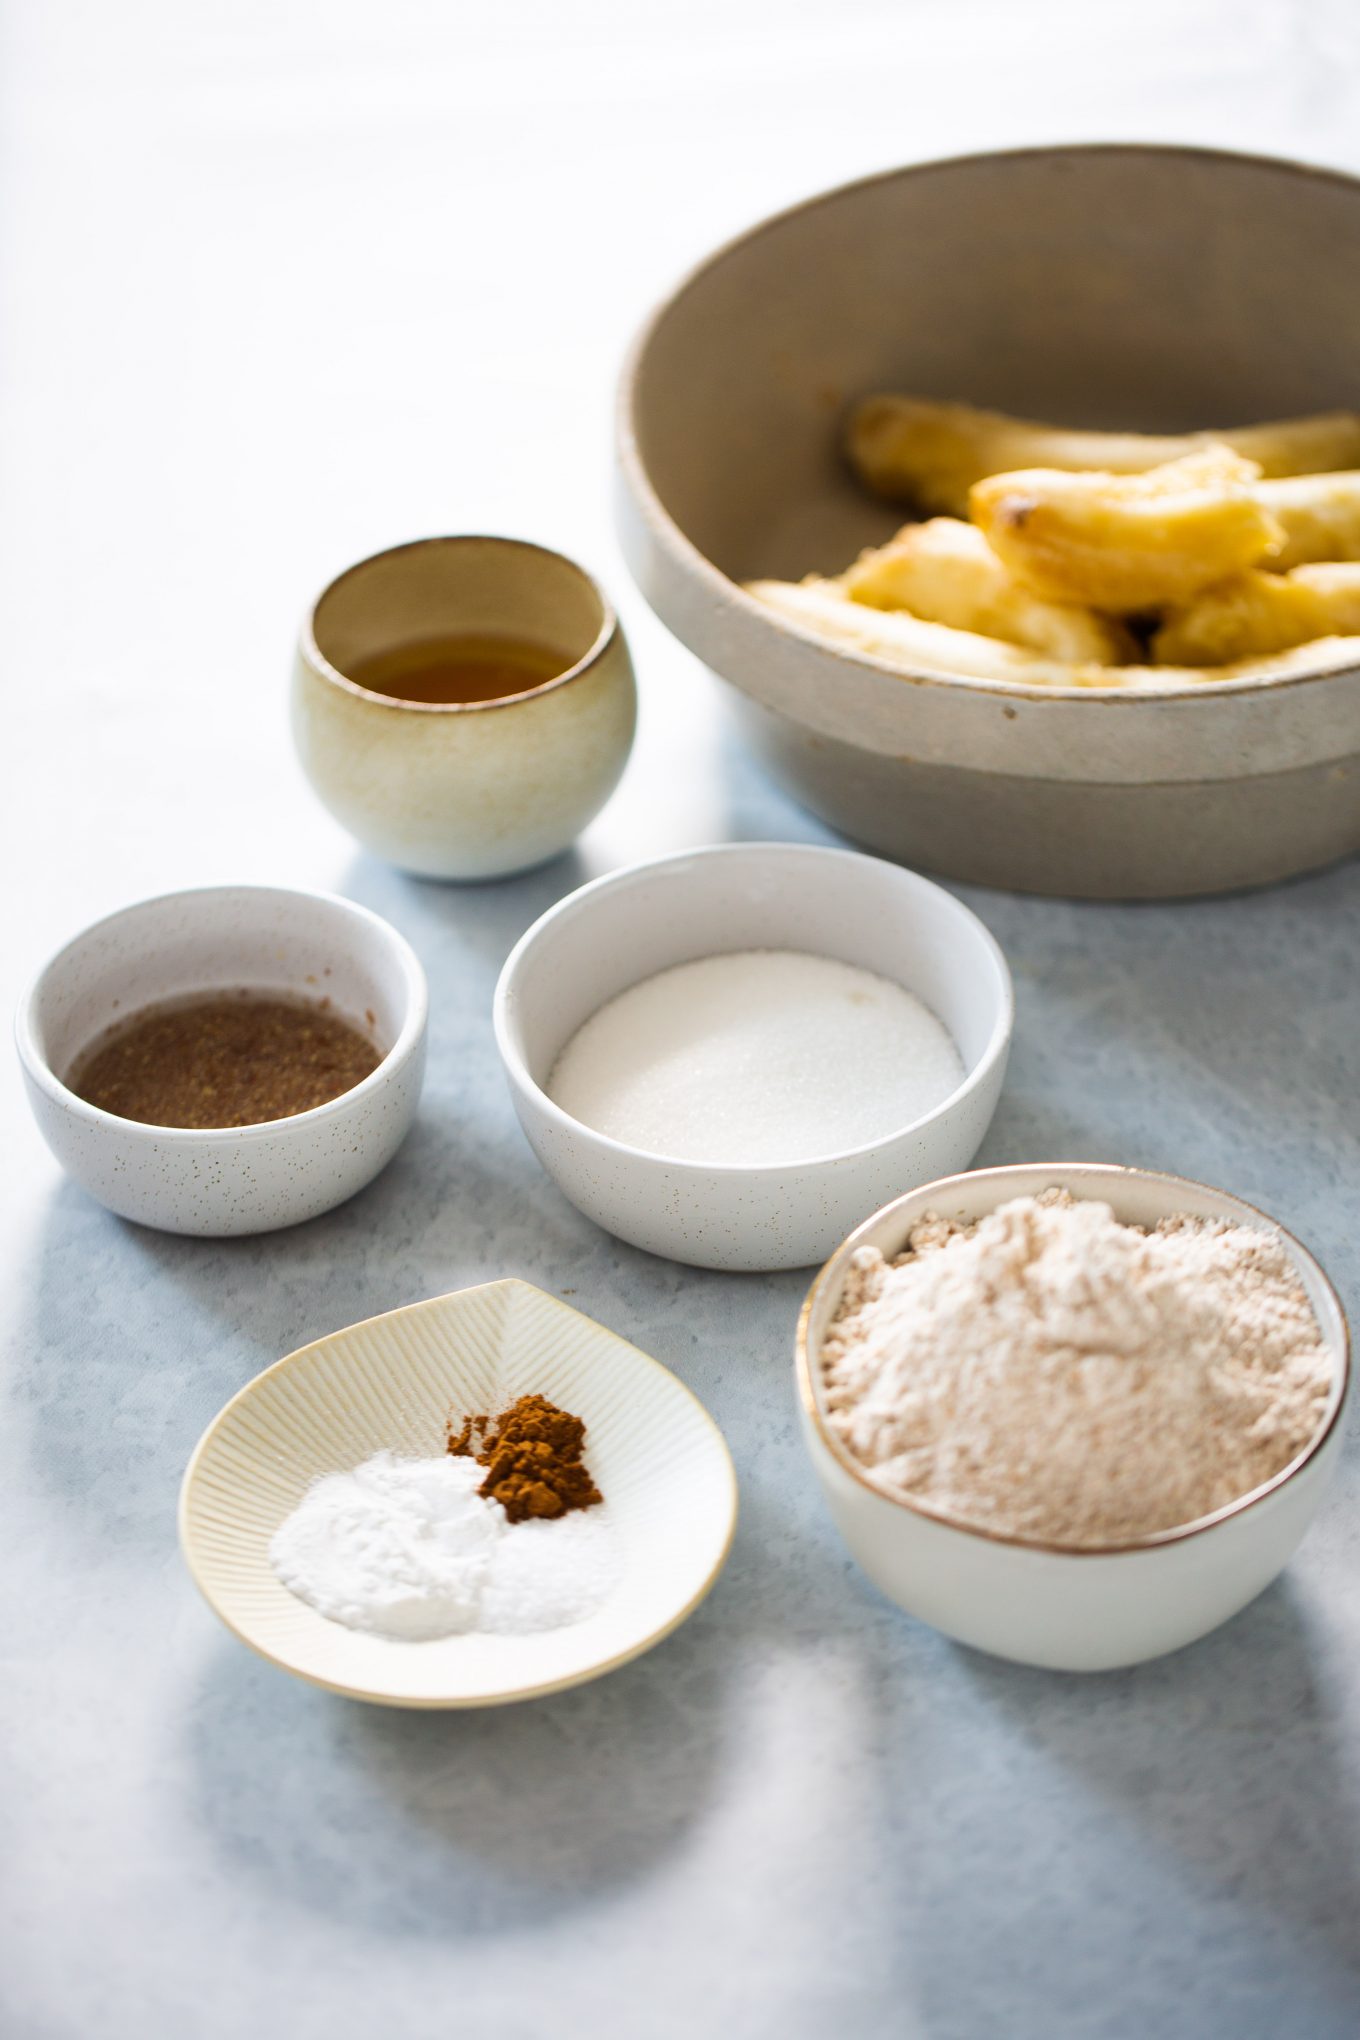 Ingredients to make vegan banana muffins